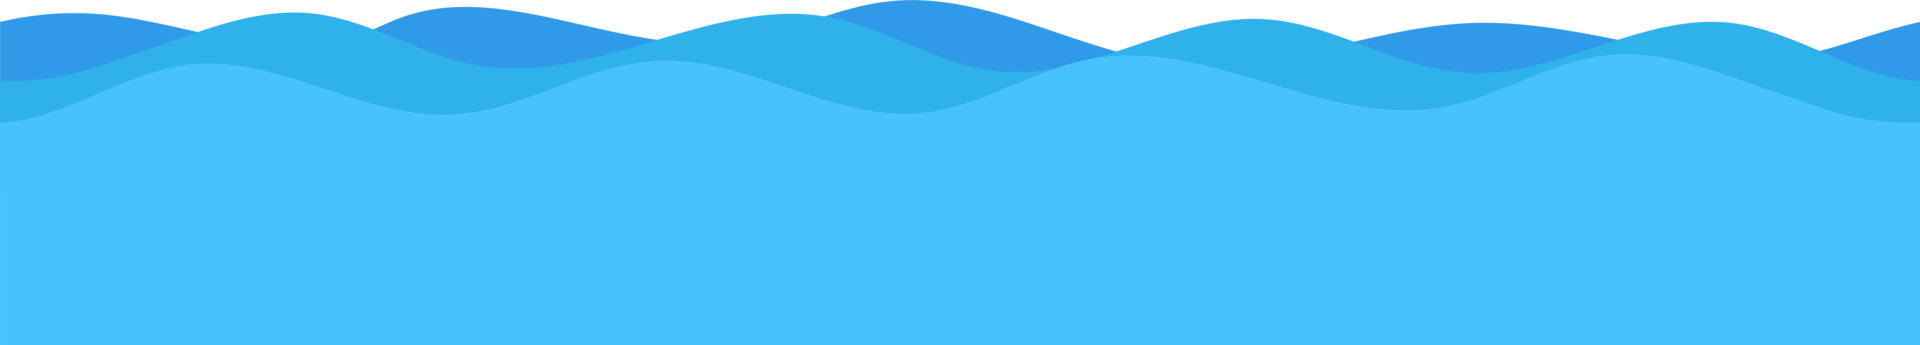 ilustração de design de clipart de ondas do mar png